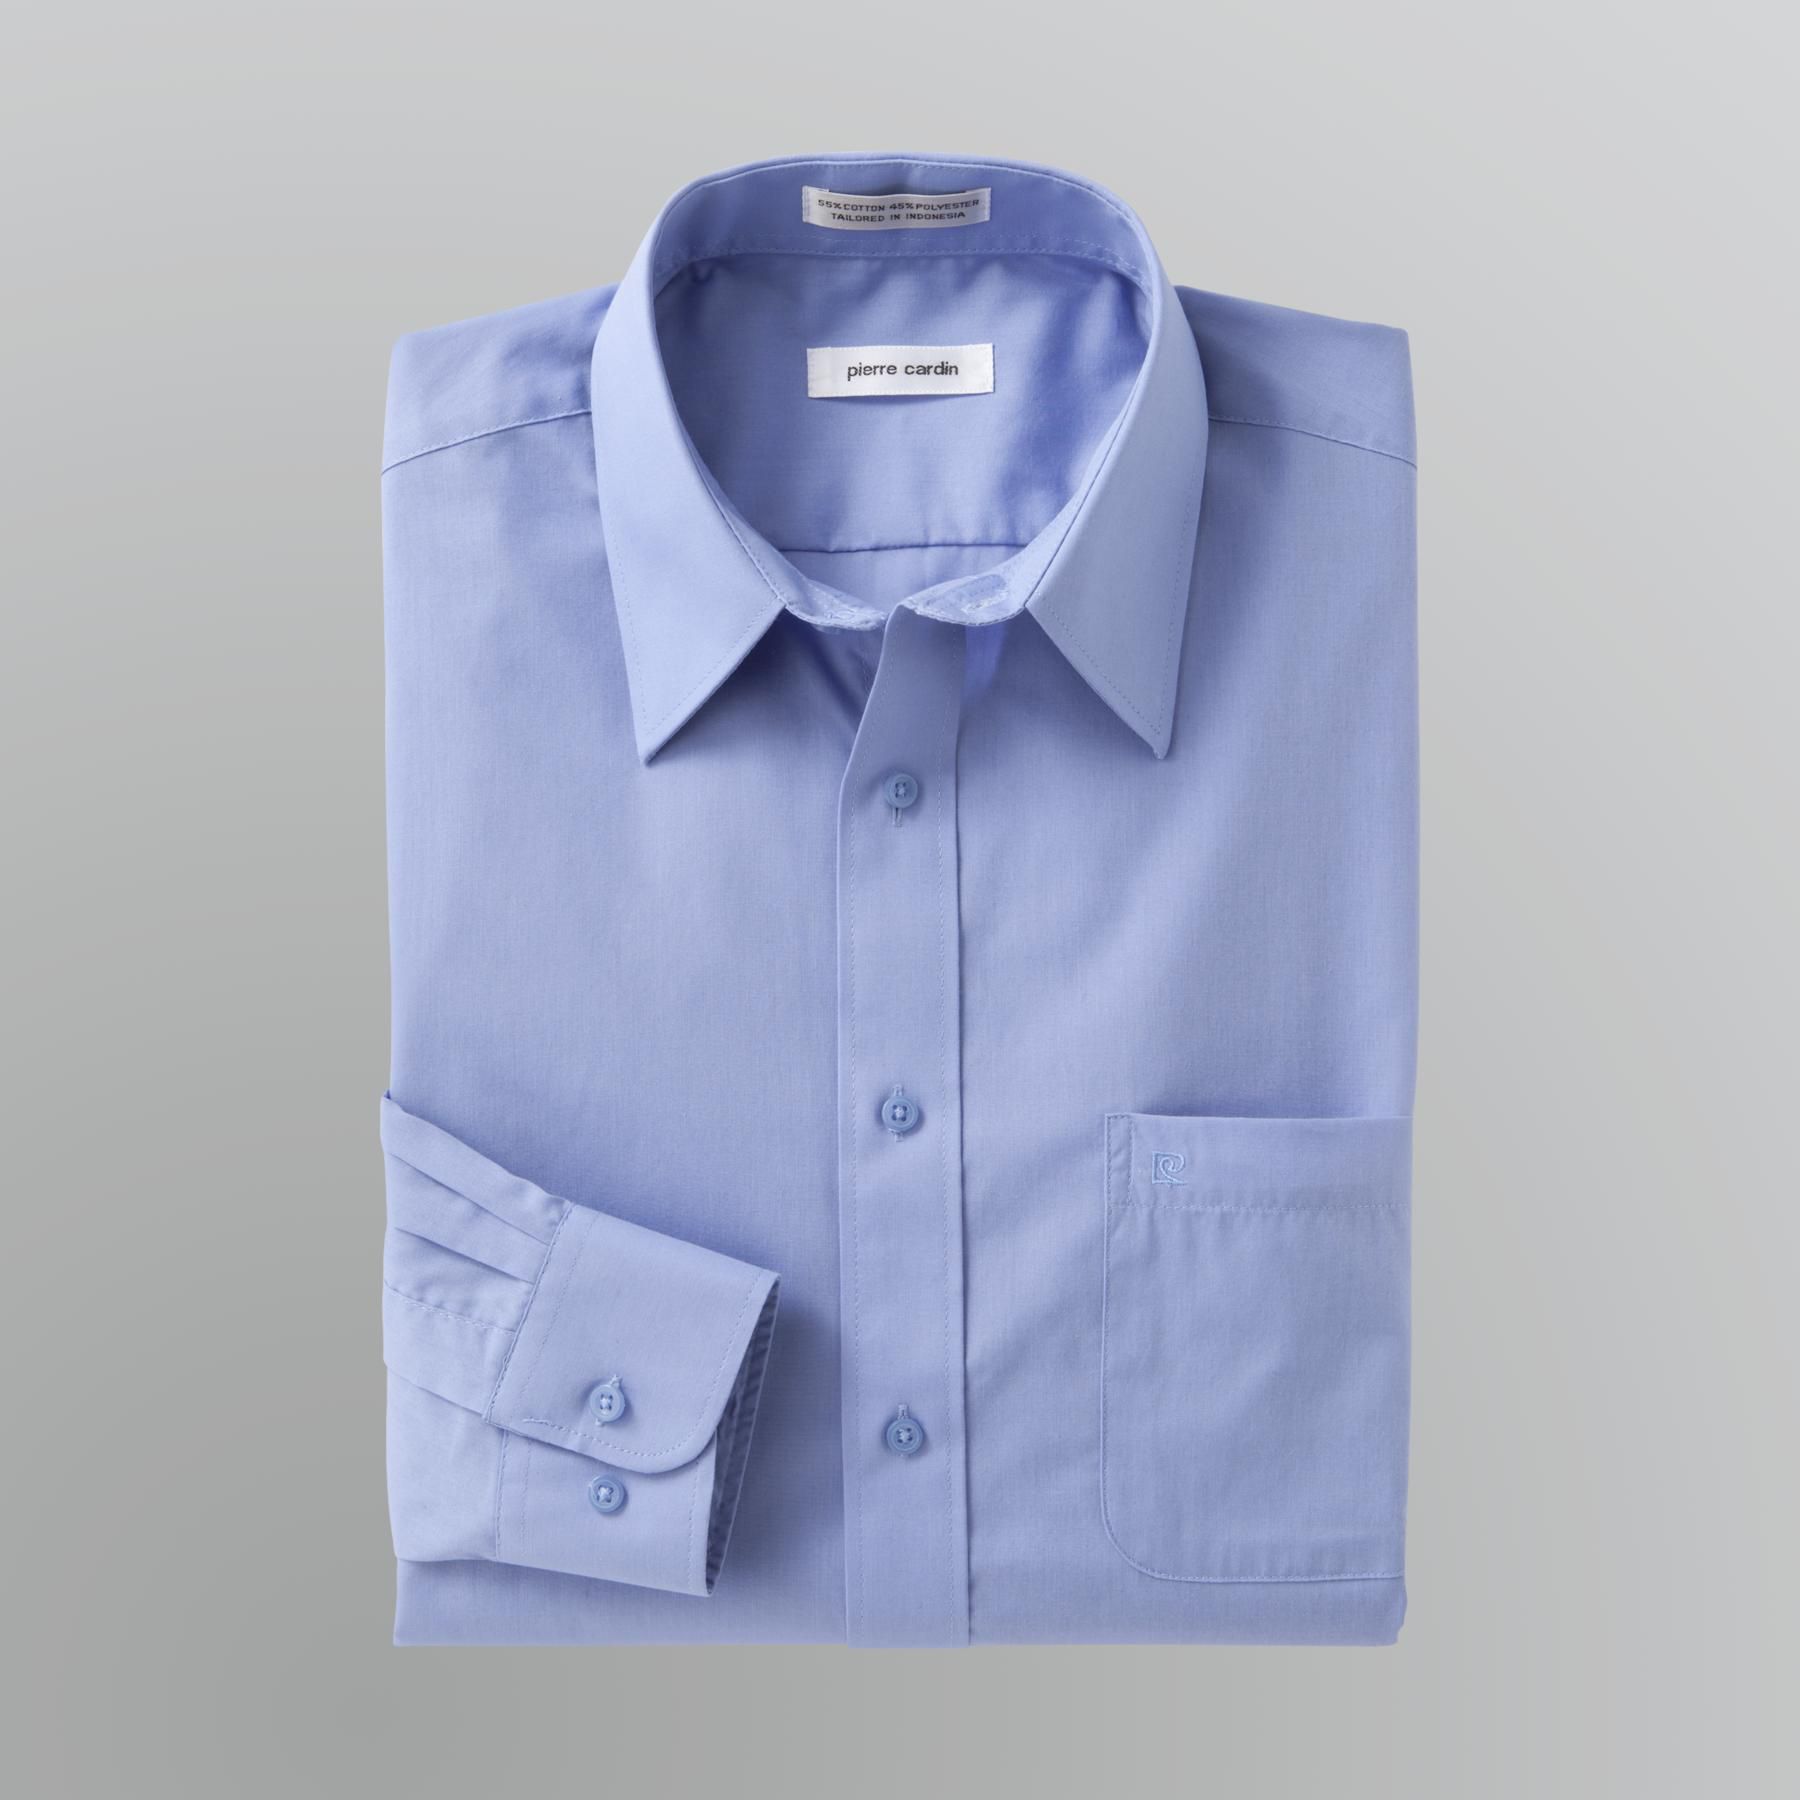 Pierre Cardin Men's Regular Fit Dress Shirt